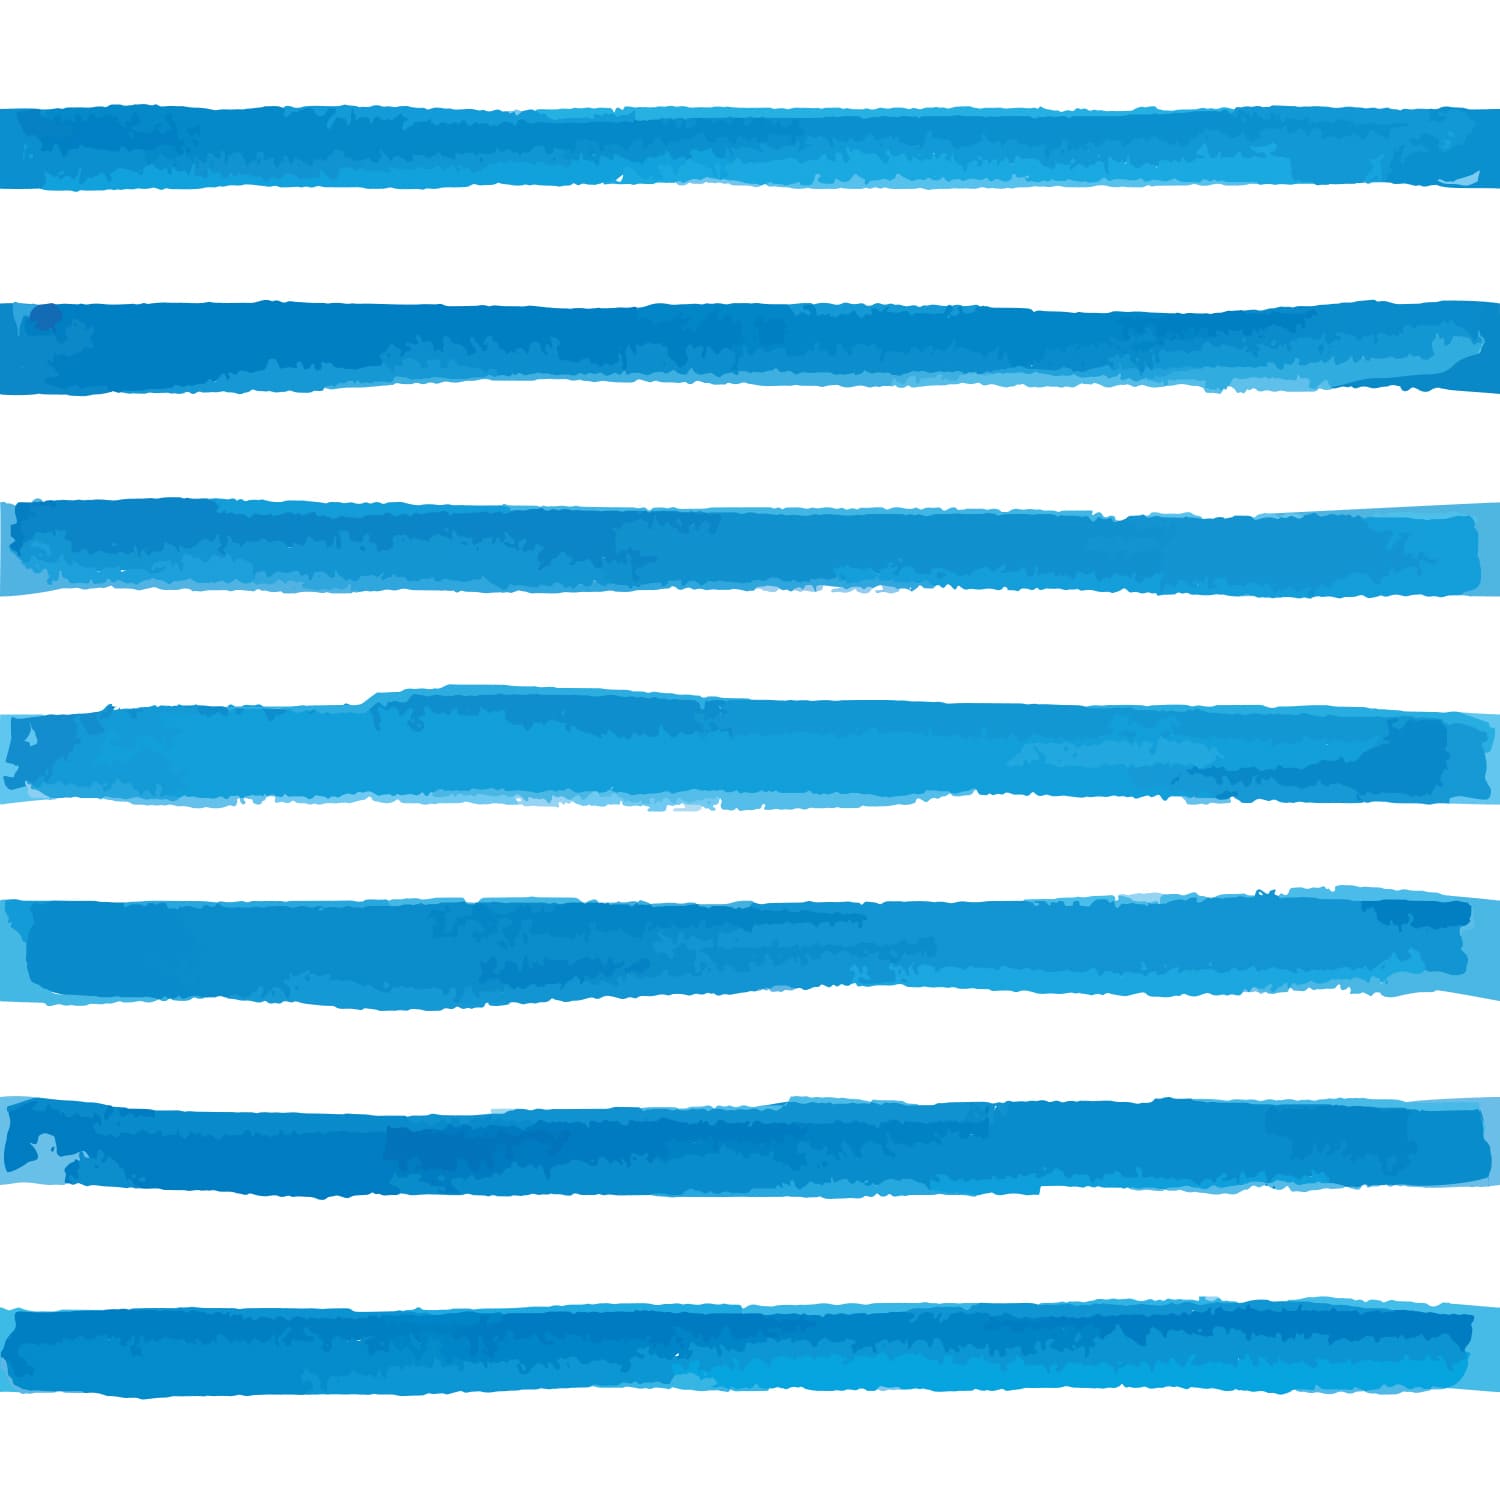 PP68-carré-papier-peint-adhesif-decoratif-revetement-vinyle-motifs-rayures-verticale-peint-à-l’aquarelle-bleu-renovation-meuble-mur-min